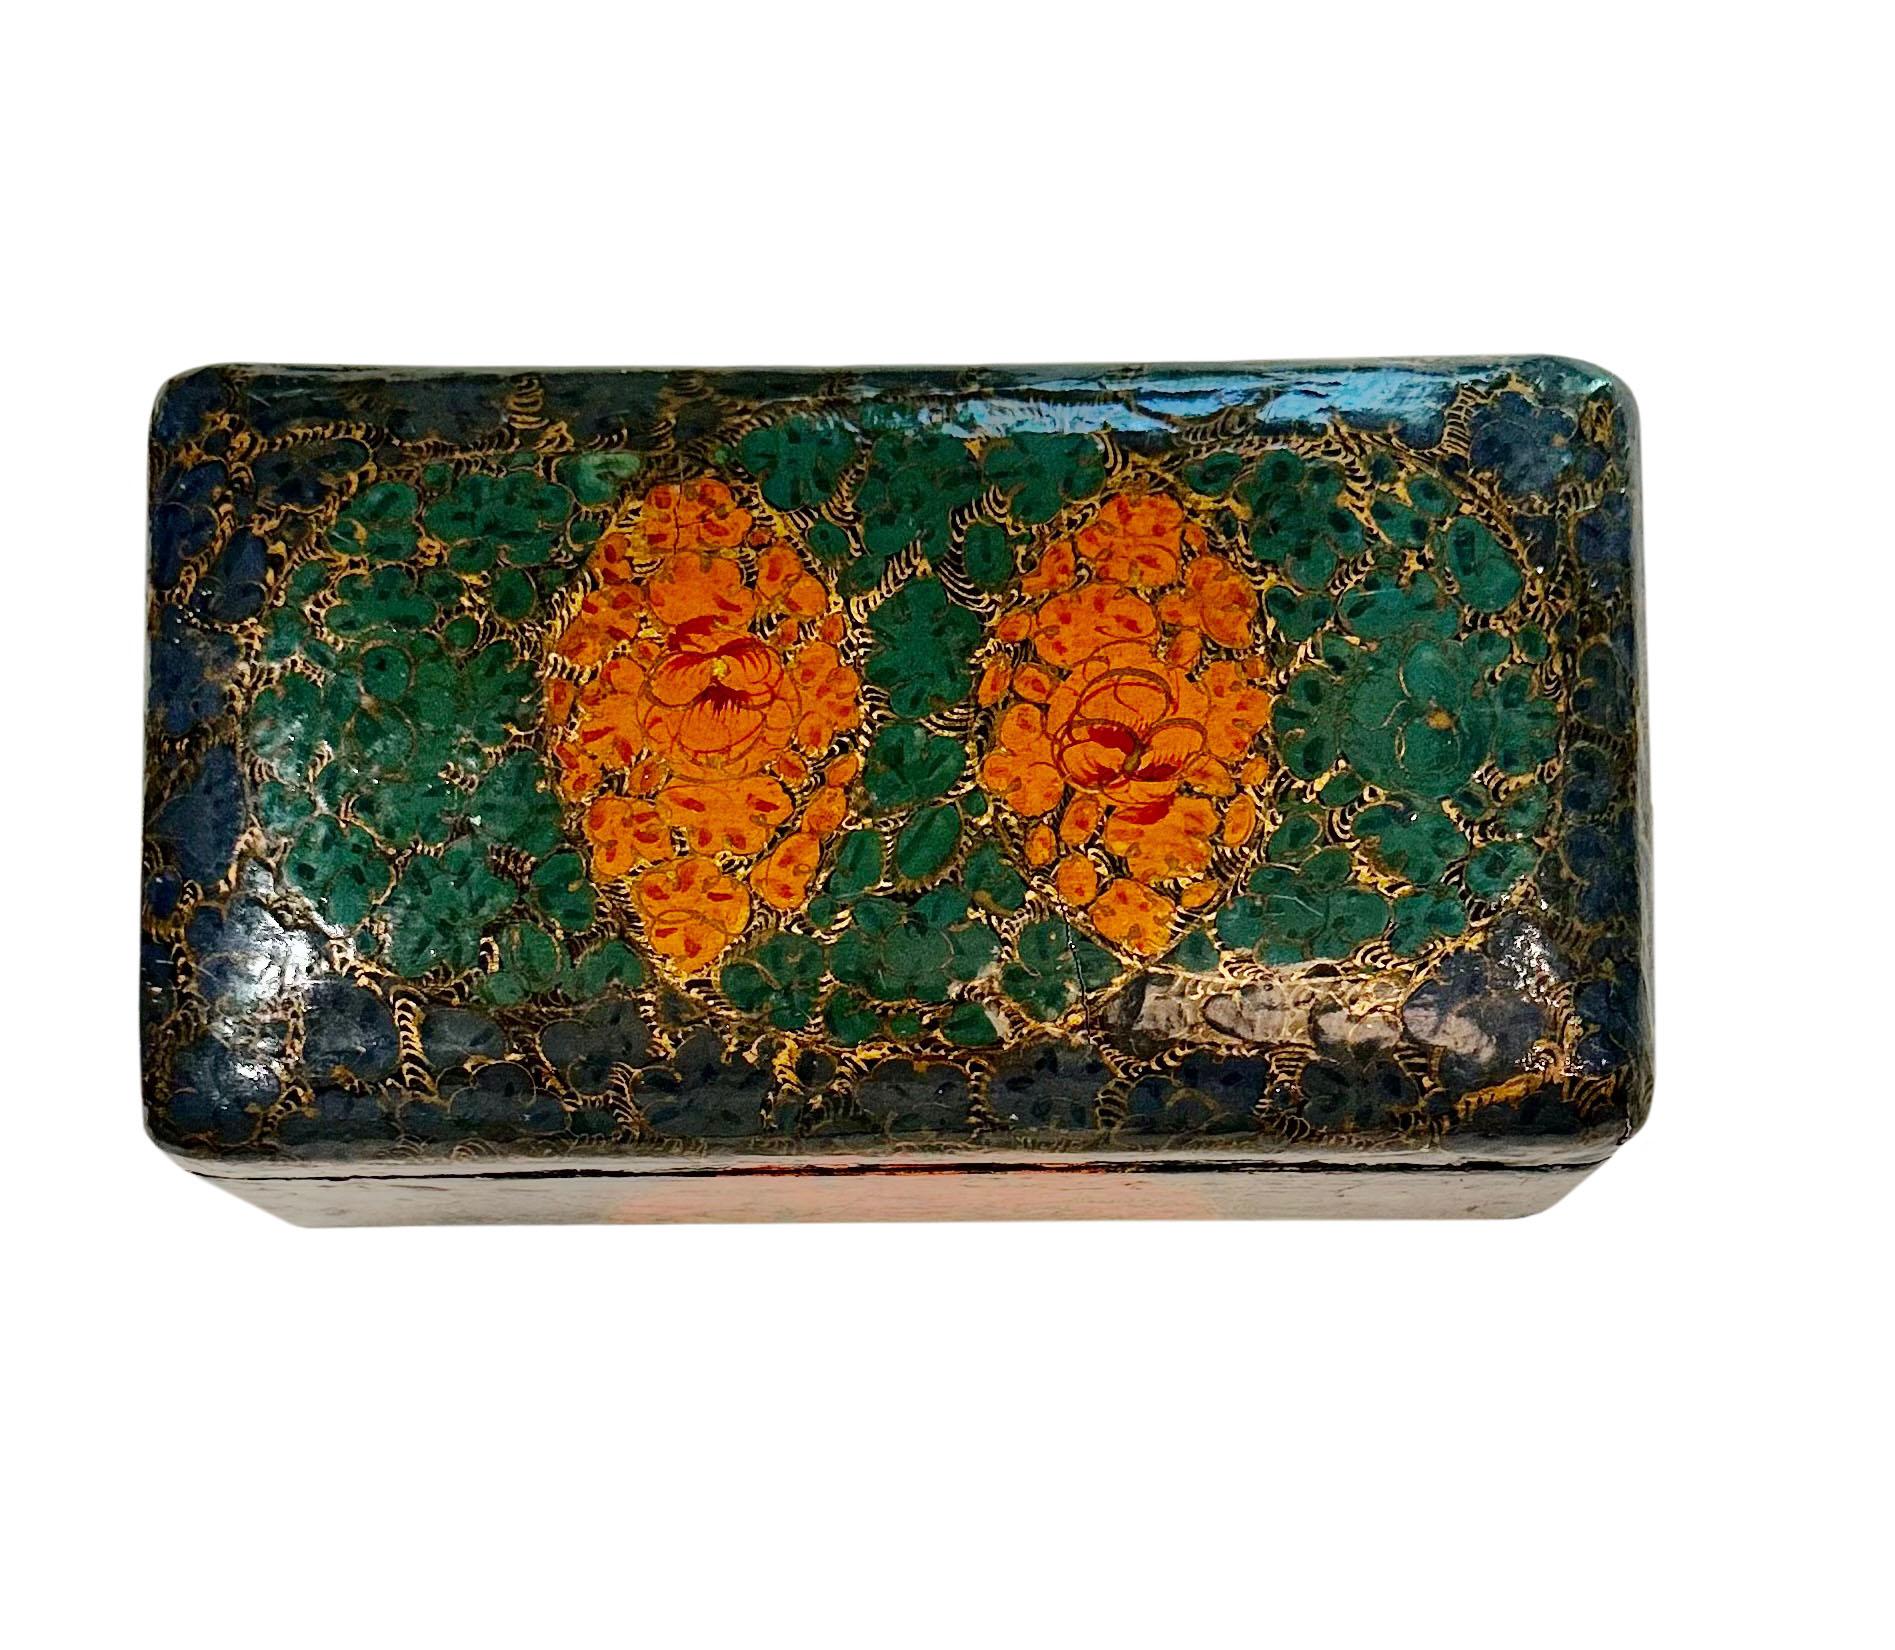 Diese Box ist wunderbar. Die Farben sind ein tolles Orange, Grün und Gold. Aus Kaschmir, Indien, um 1915 oder früher.